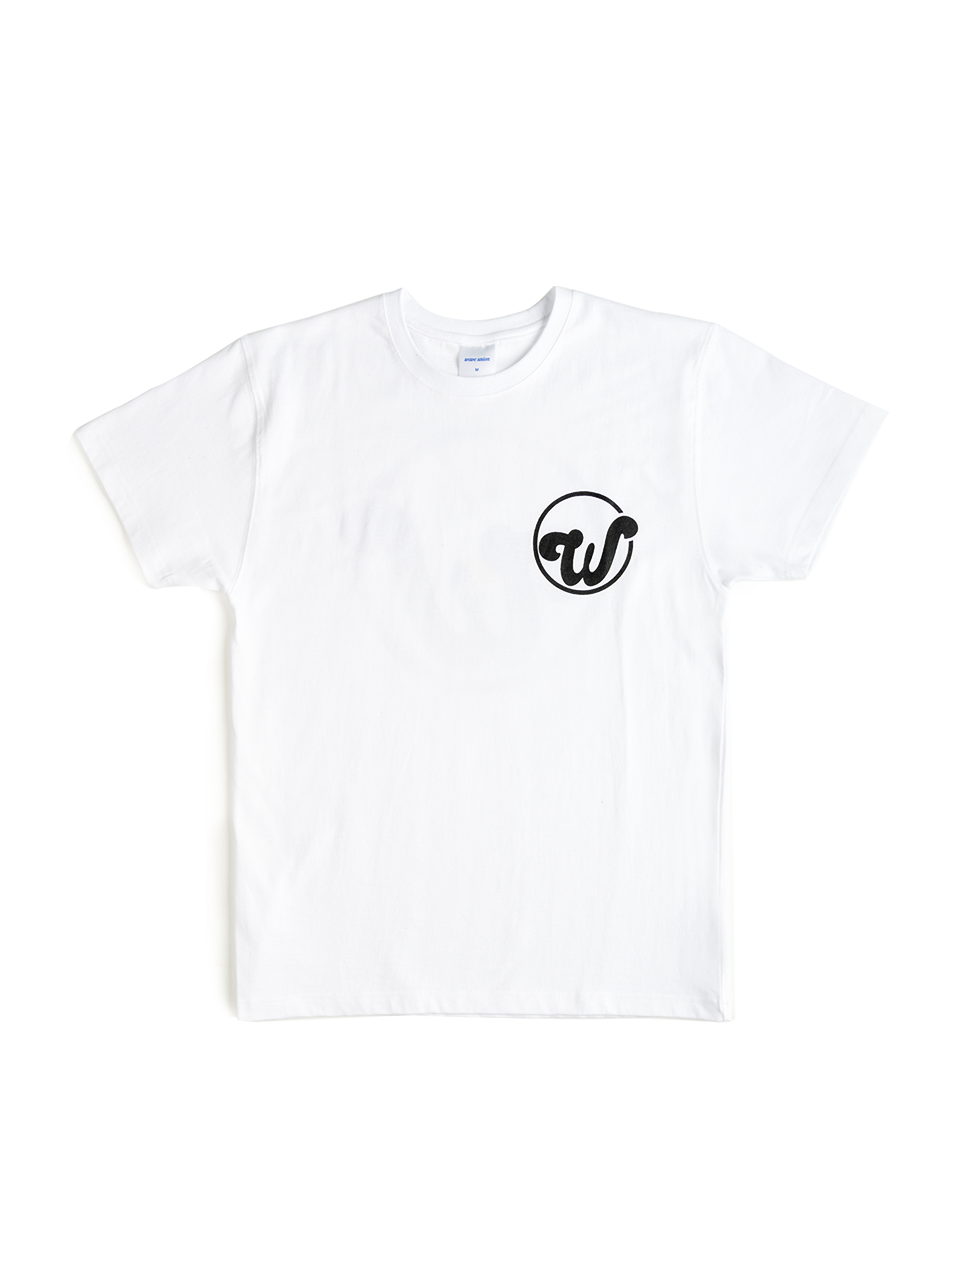 Circle logo short sleeve T-shirt white